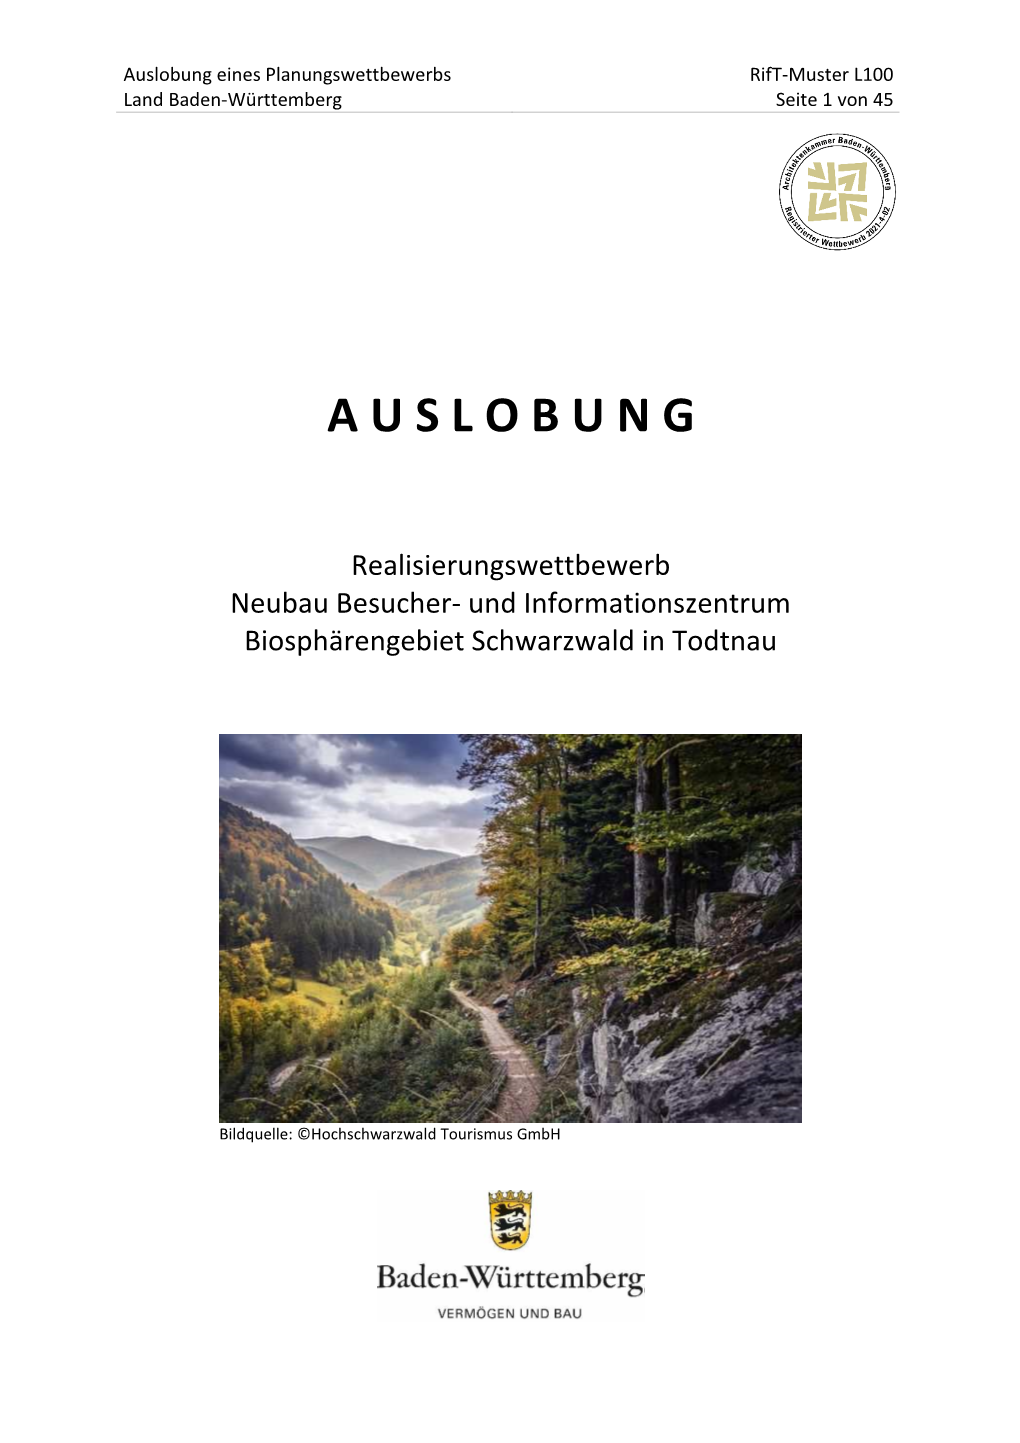 Auslobung Eines Planungswettbewerbs Rift-Muster L100 Land Baden-Württemberg Seite 1 Von 45